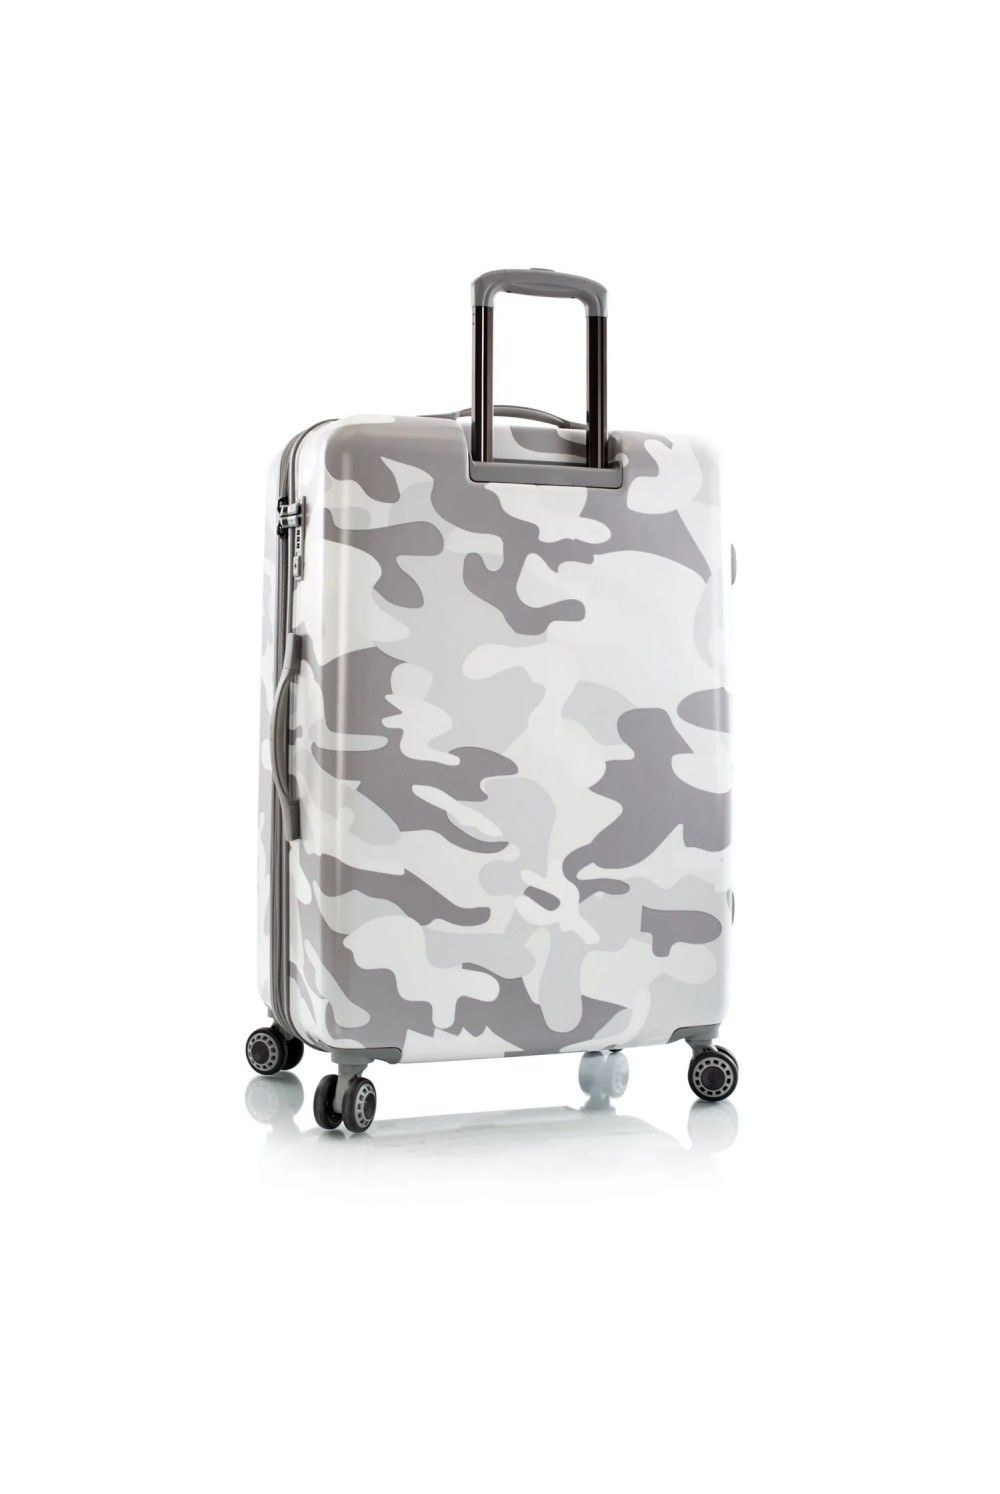 Suitcase Heys White Camo 4 Rad Large 76cm expandable